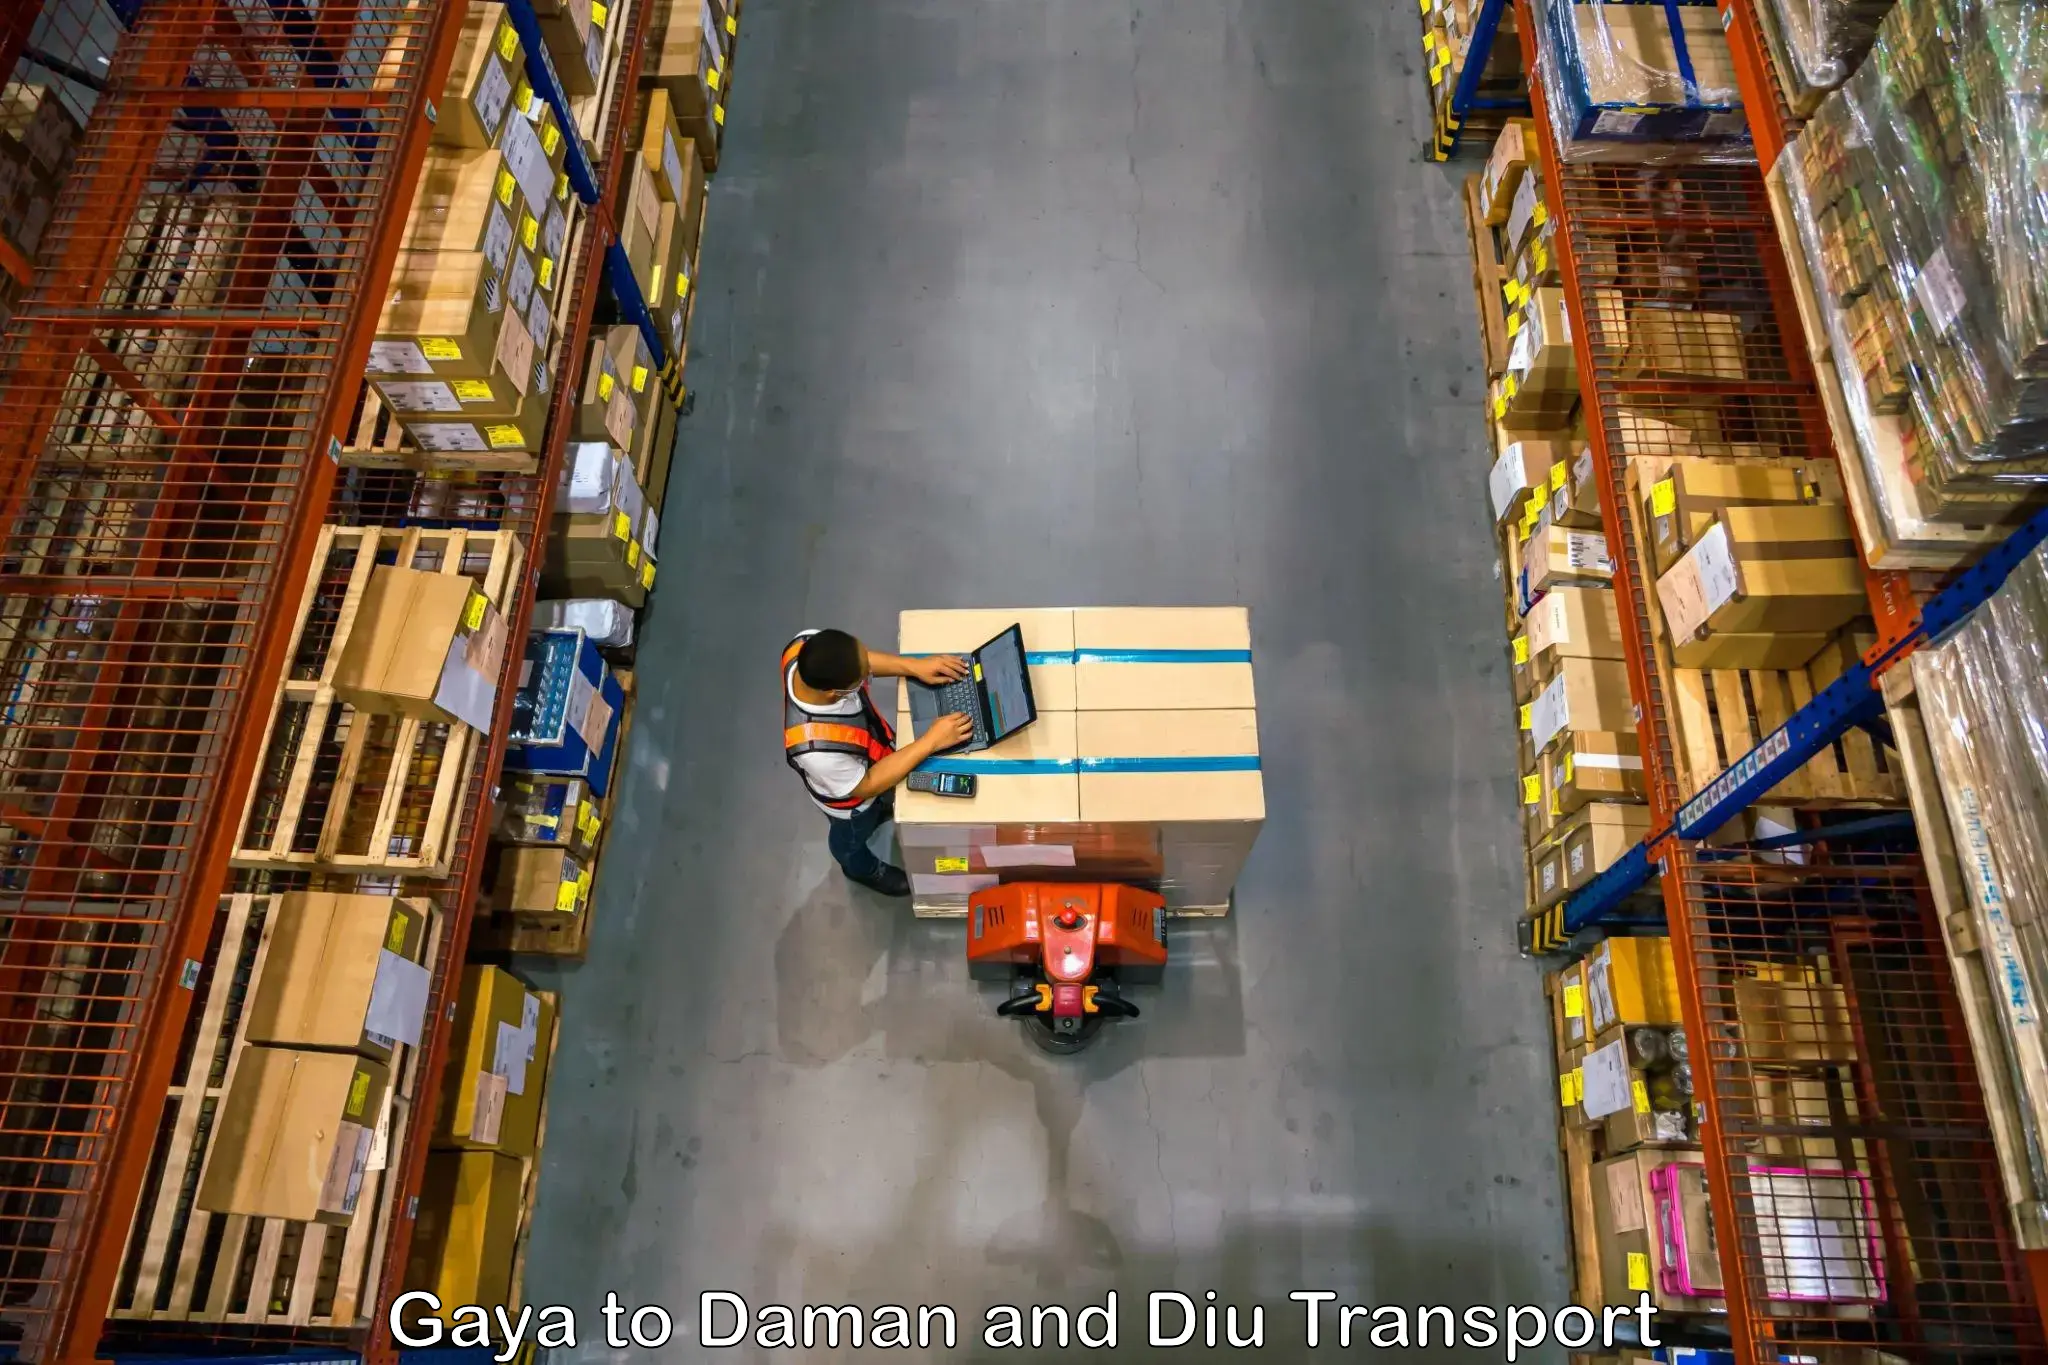 Vehicle transport services Gaya to Daman and Diu